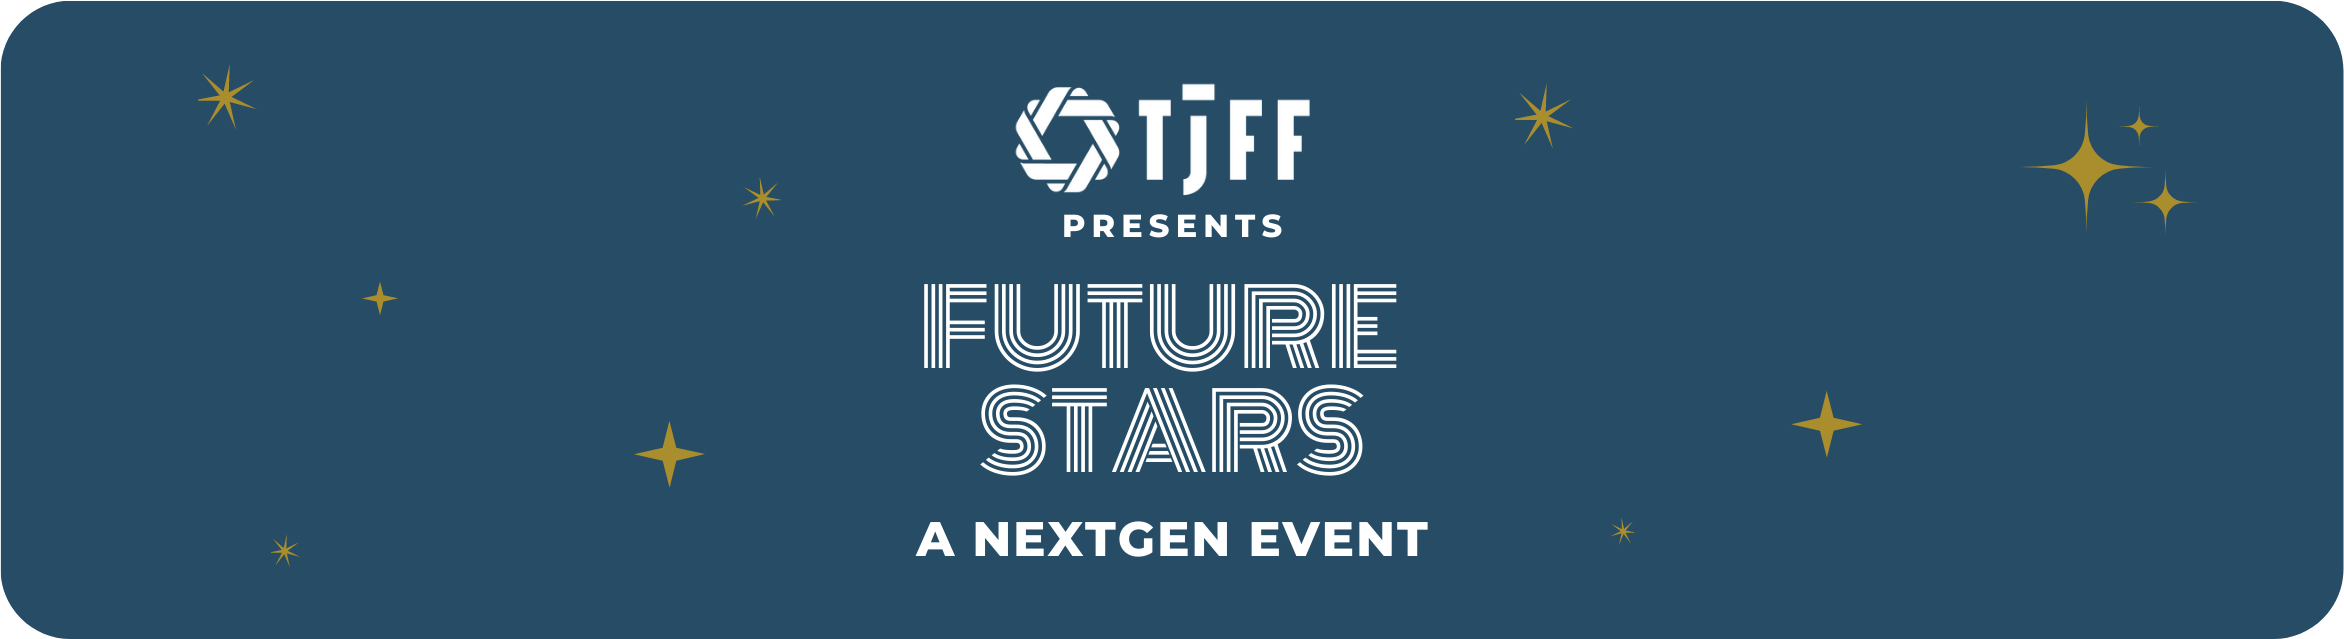 TJFF Presents FUTURE STARS, a NextGen Event